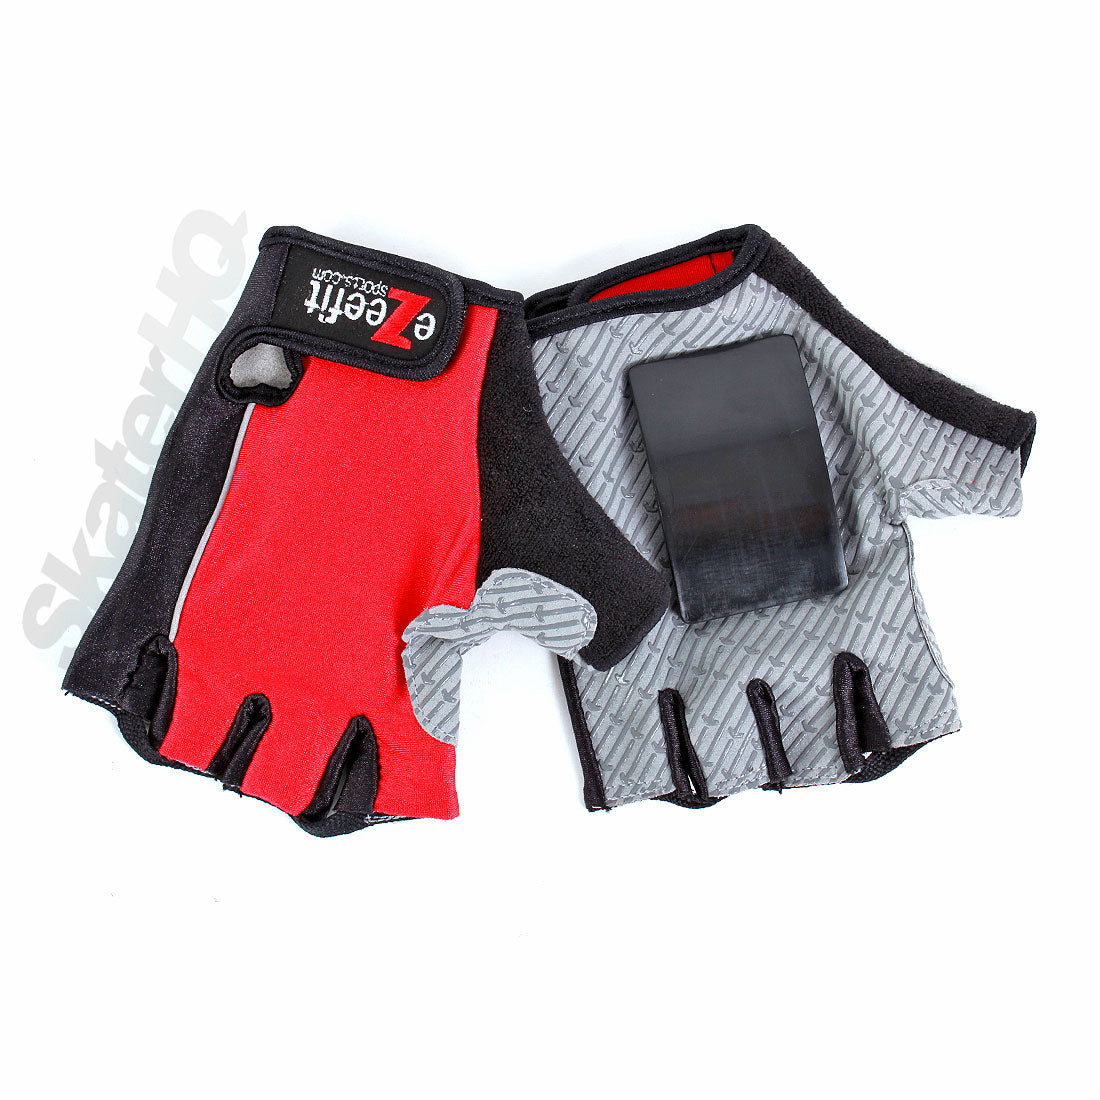 Ezeefit Skate Slider Gloves - Large Protective Gear